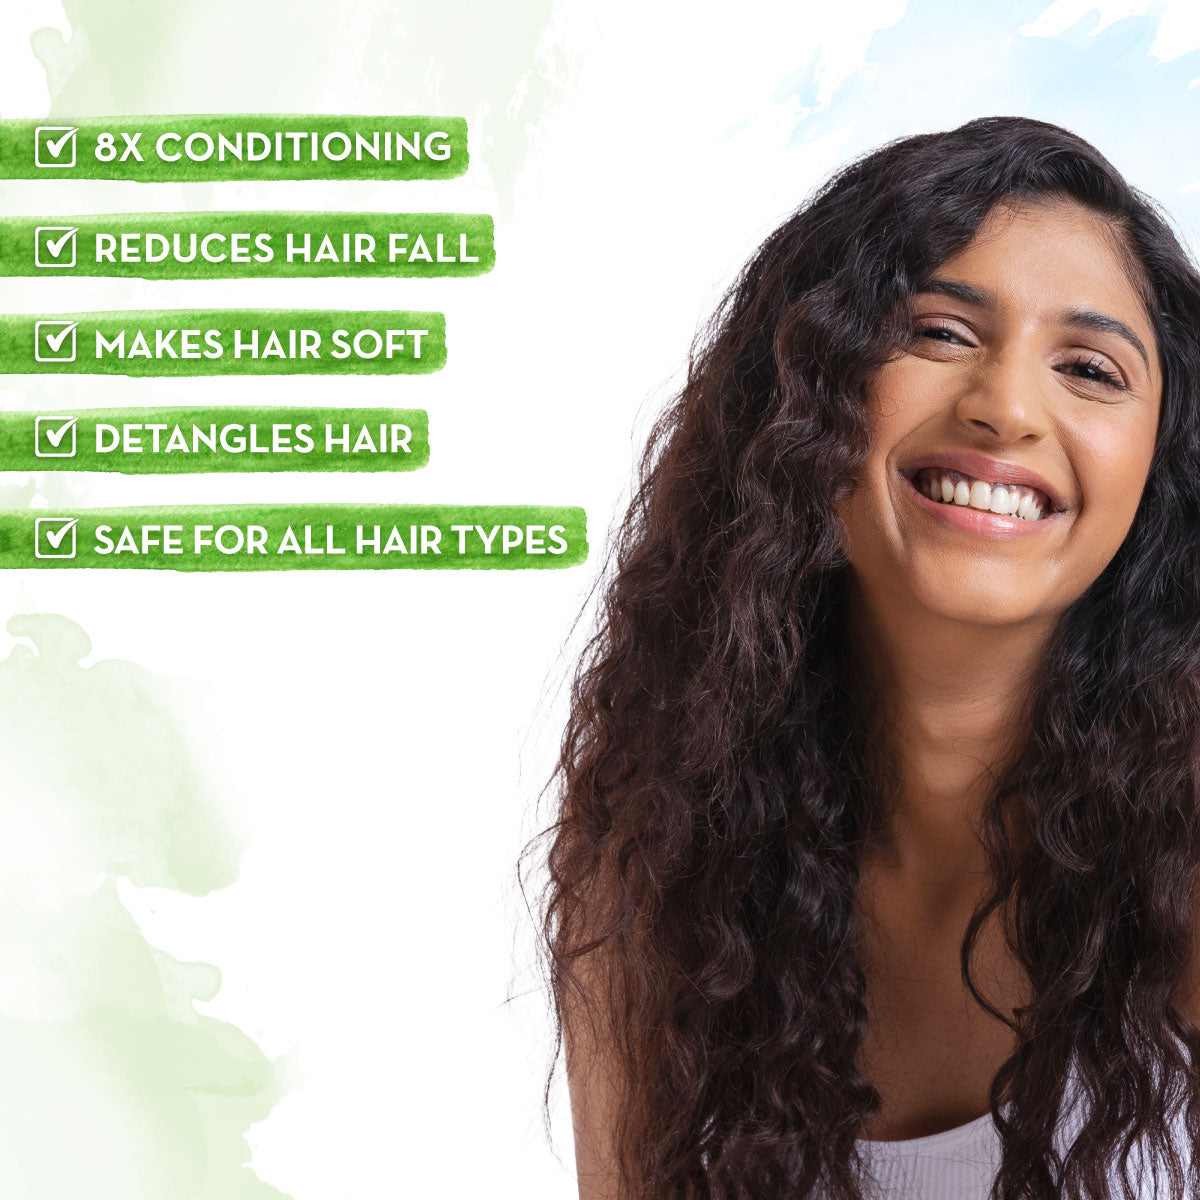 Onion Conditioner for Hair Fall Control - 100 ml Reduces Hair Fall | Detangles Hair | Softens Hair